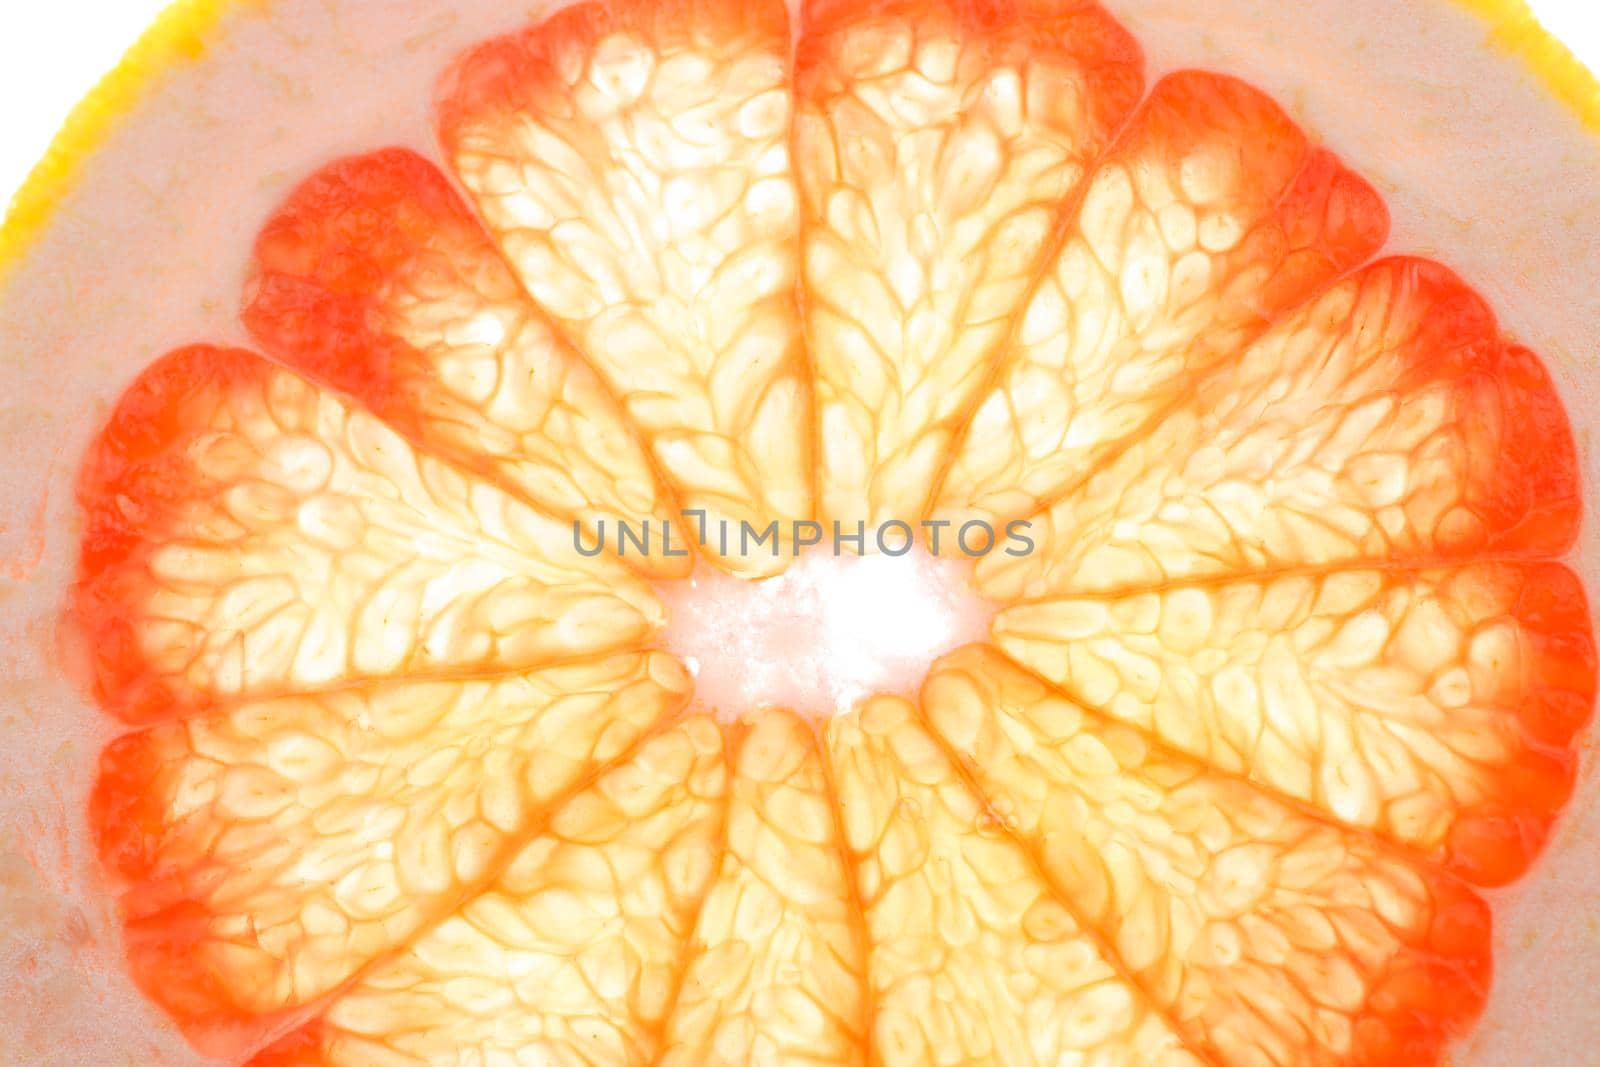 grapefruit slice on white background